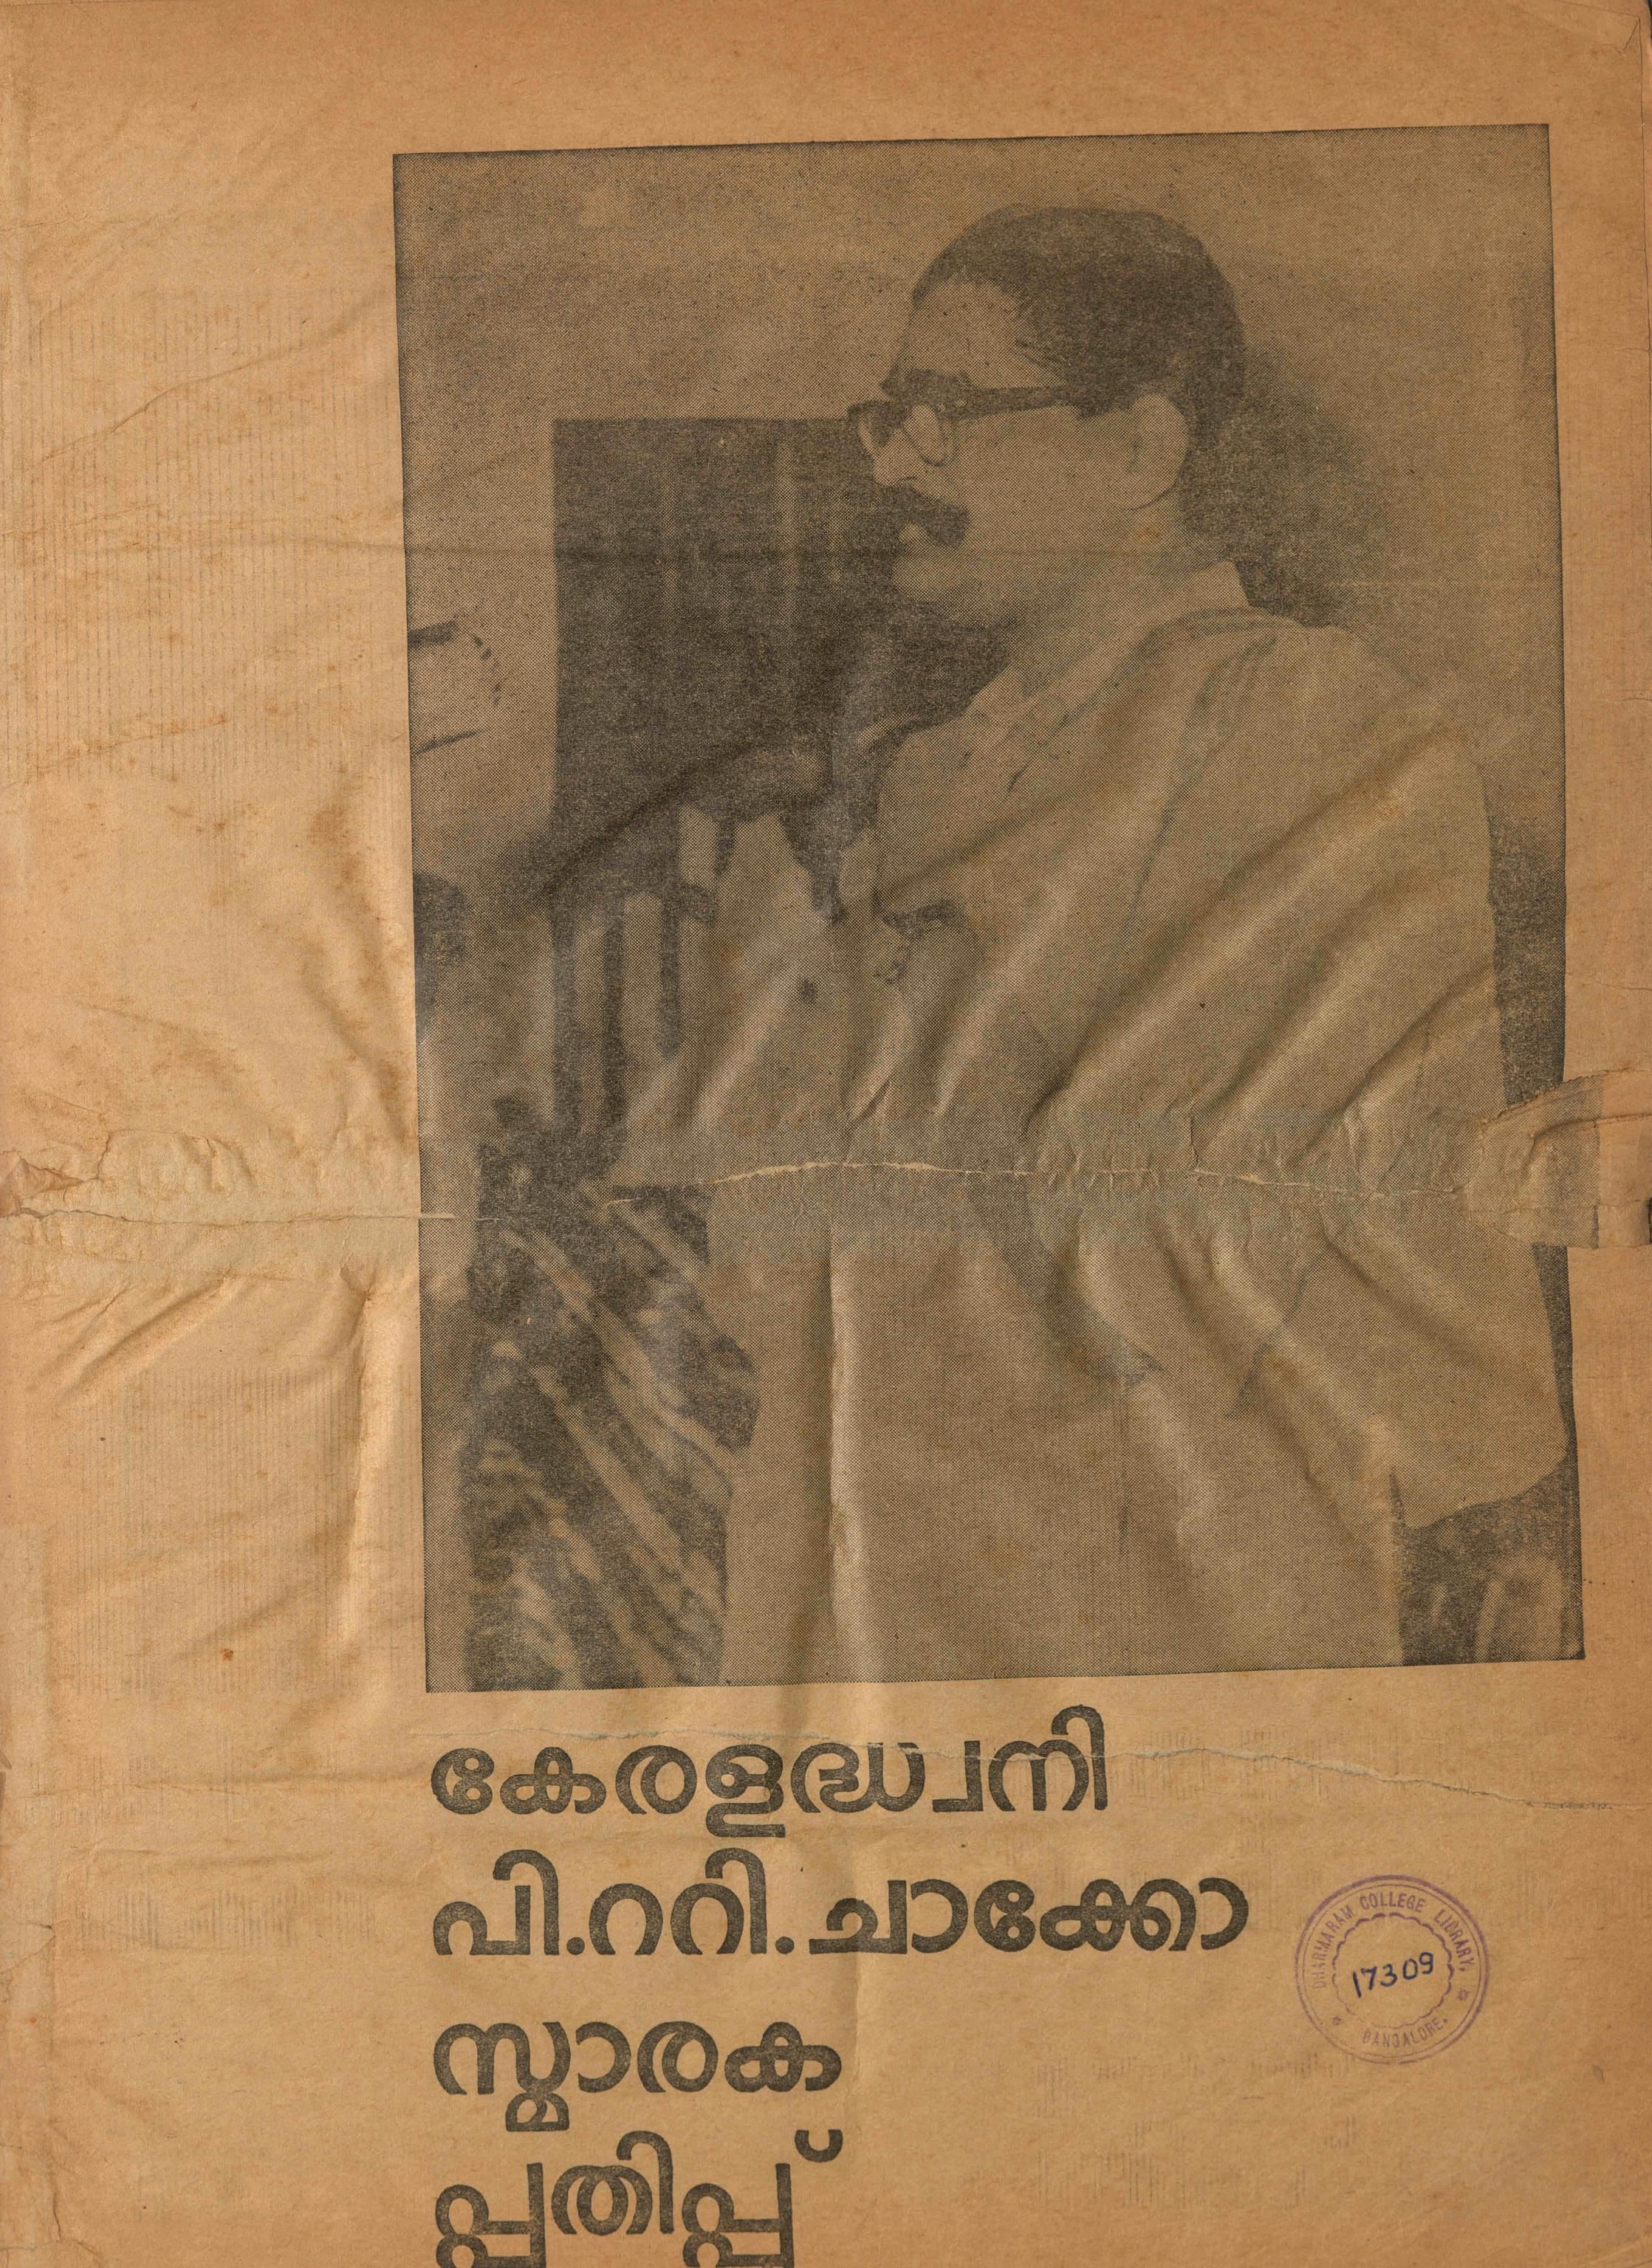  1964 - കേരള ധ്വനി - പി - റ്റി - ചാക്കോ സ്മാരക പതിപ്പ്